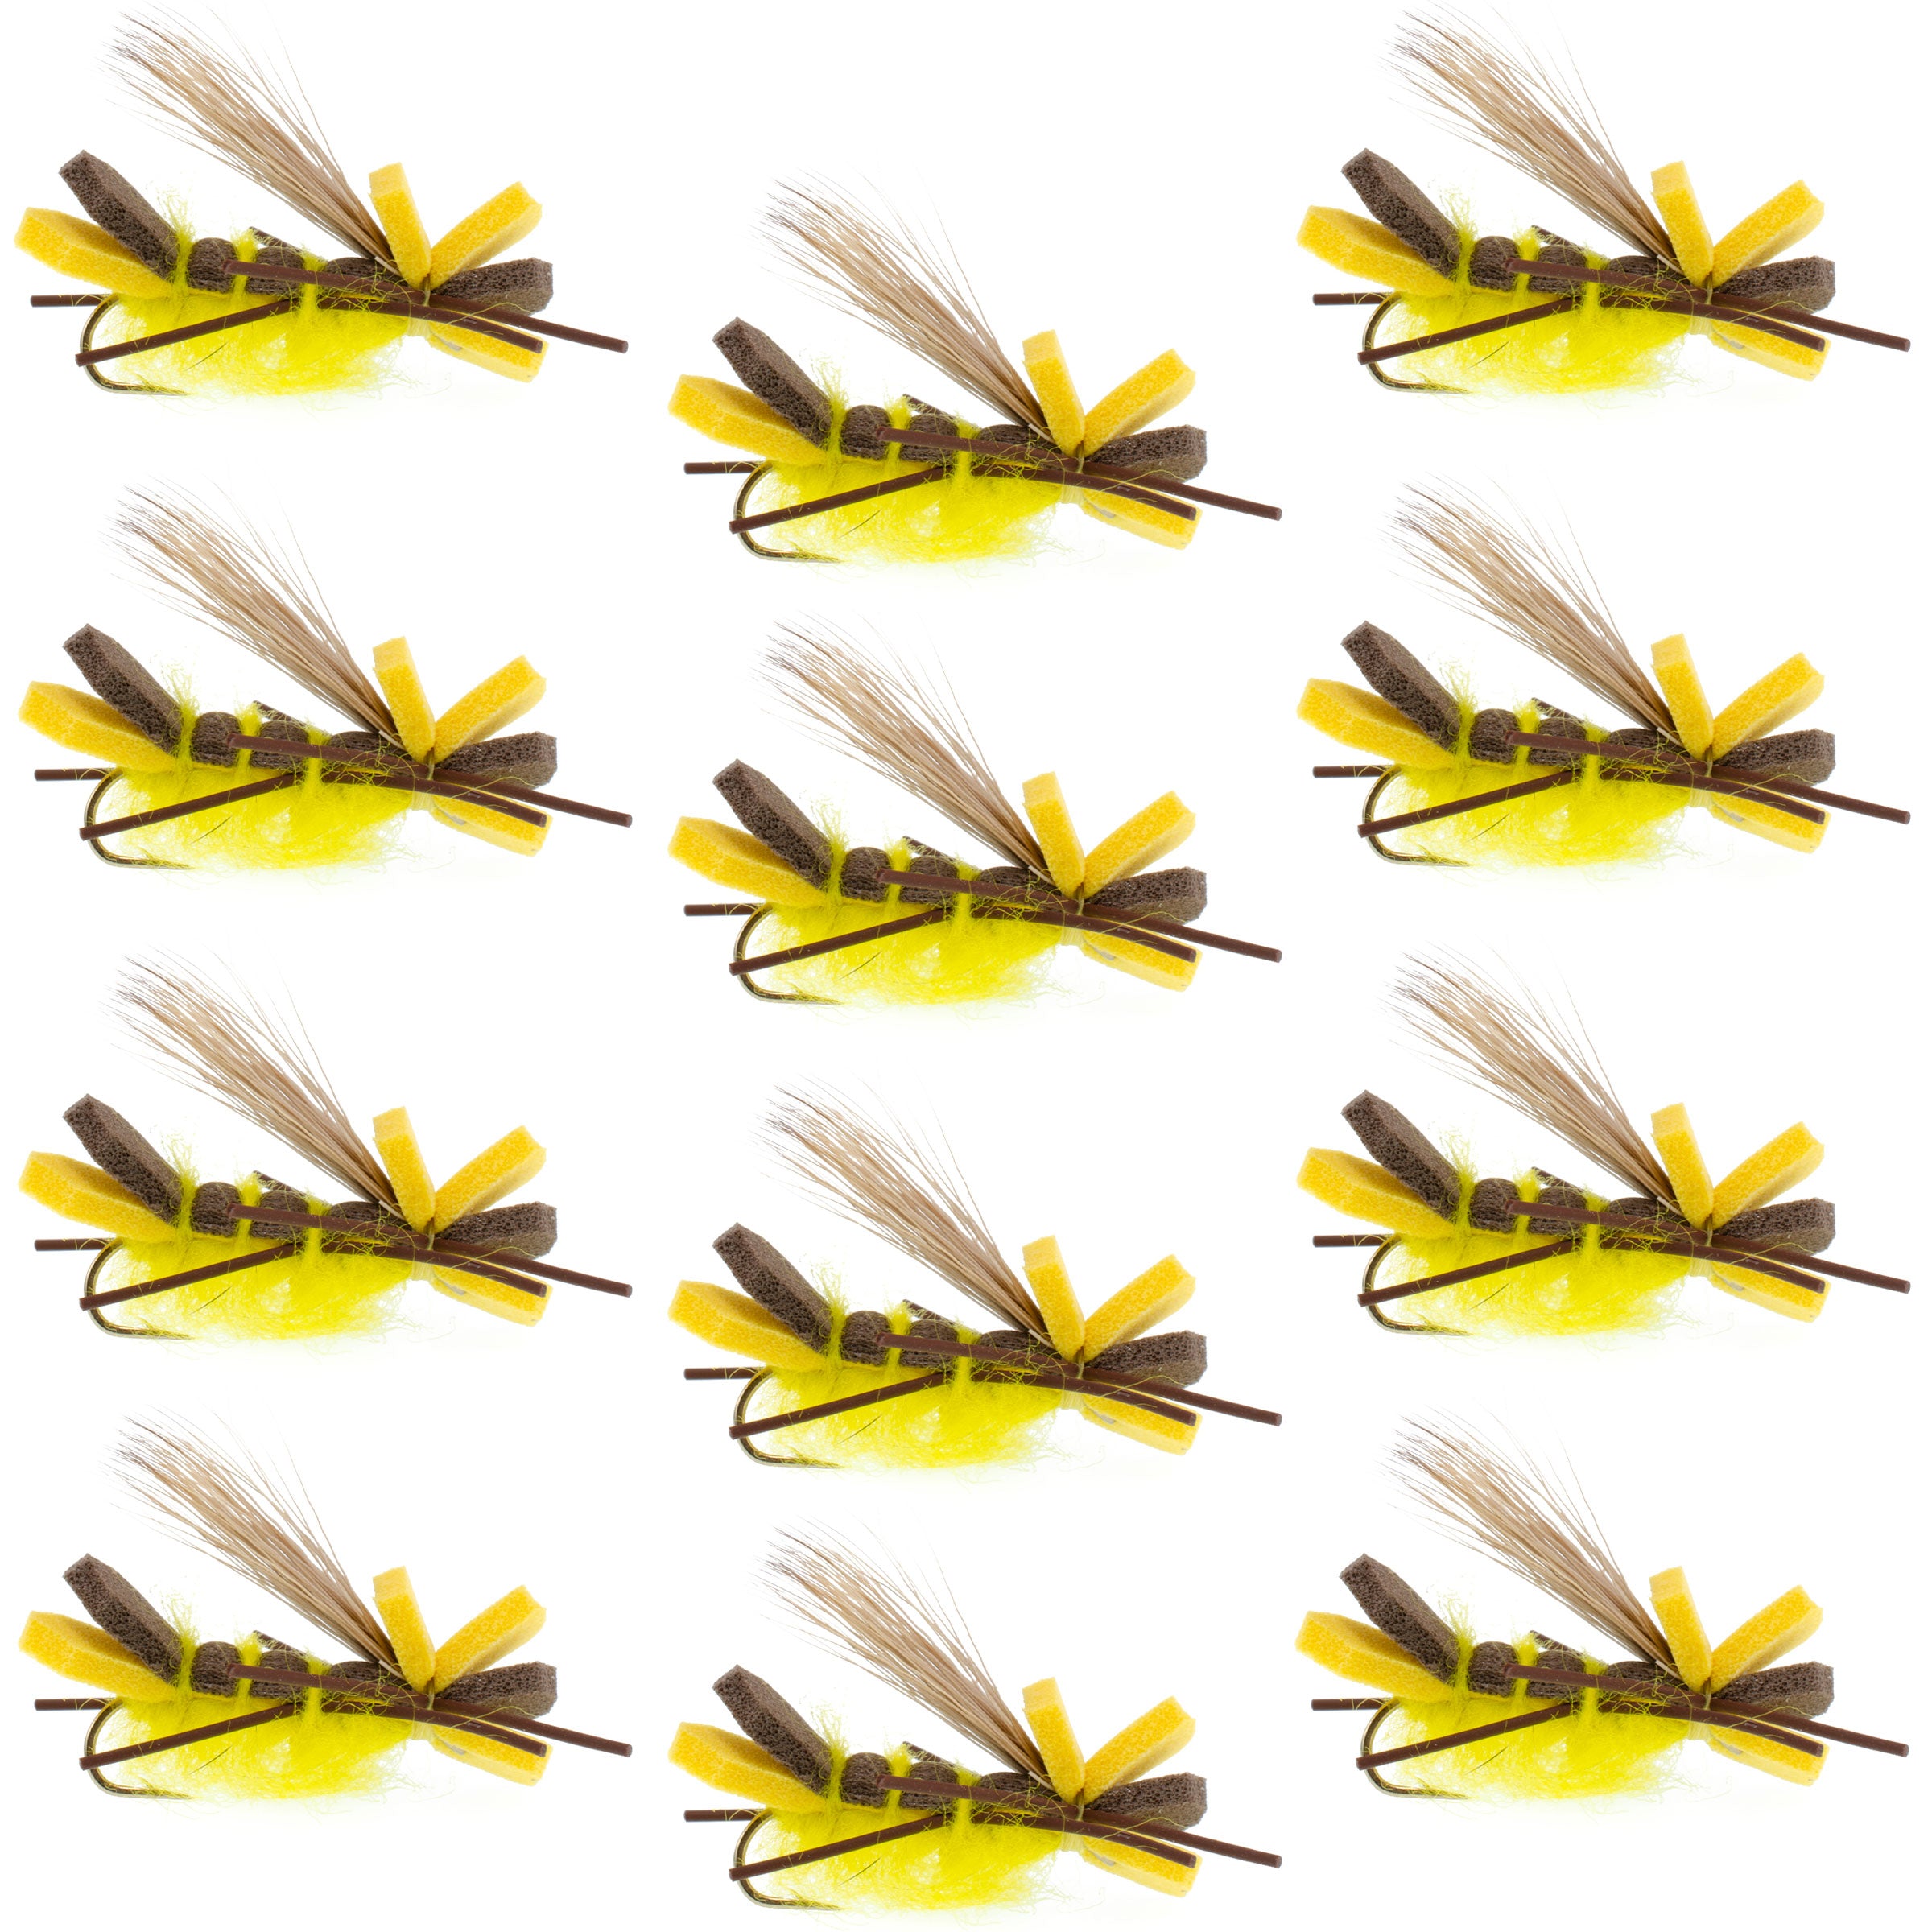 Yellow Godzilla Hopper - Saltamontes de espuma o patrón de mosca de salmón adulto - 1 docena de moscas gancho tamaño 10